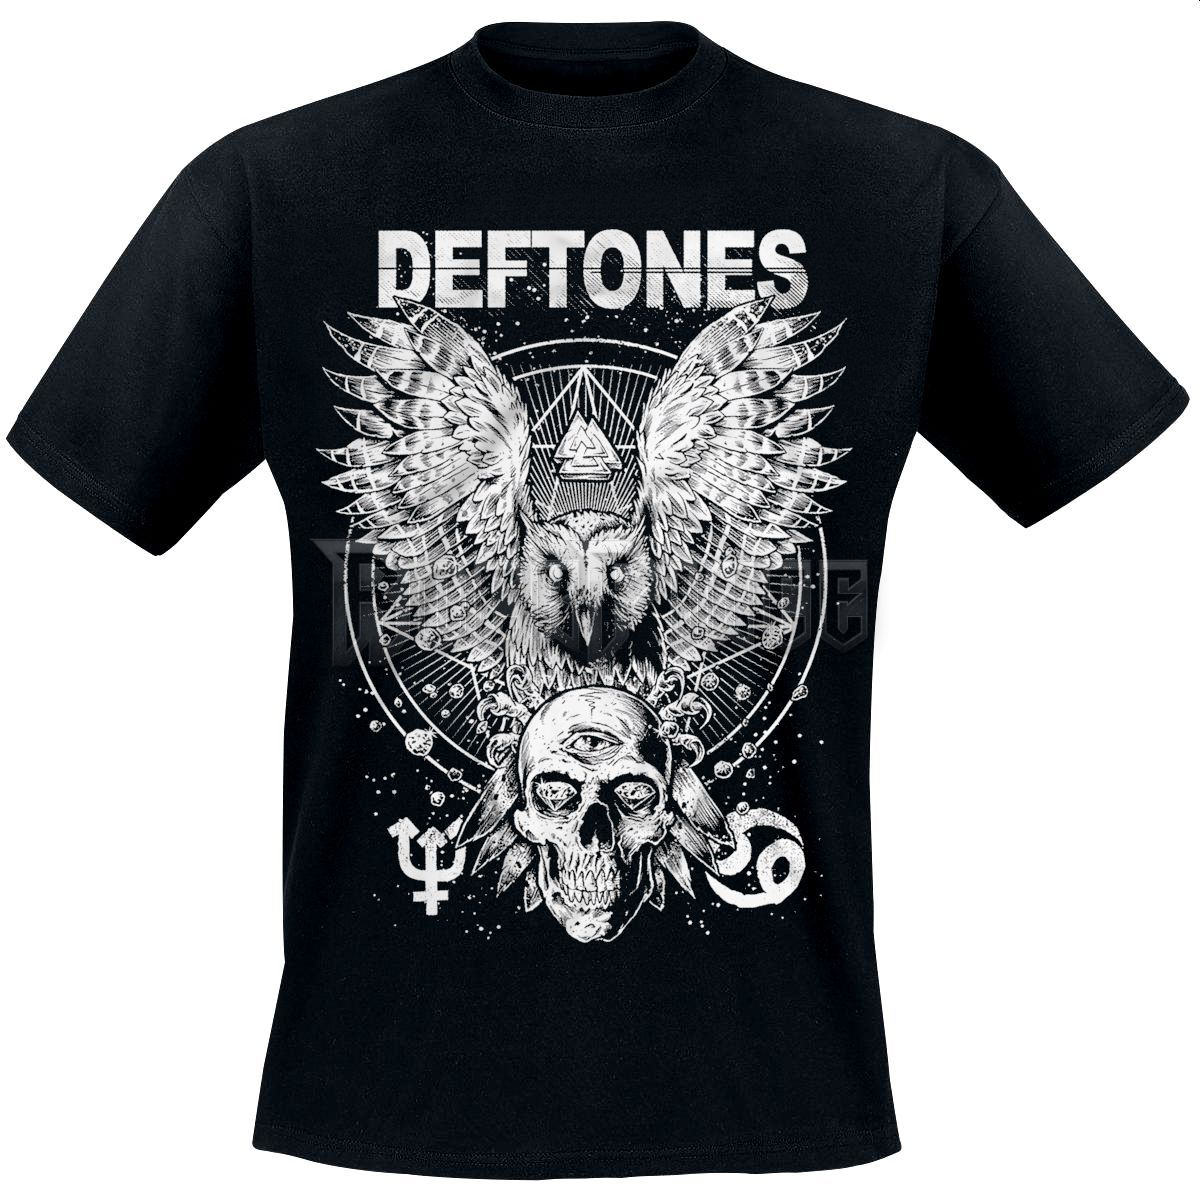 Deftones - Owl - UNISEX PÓLÓ